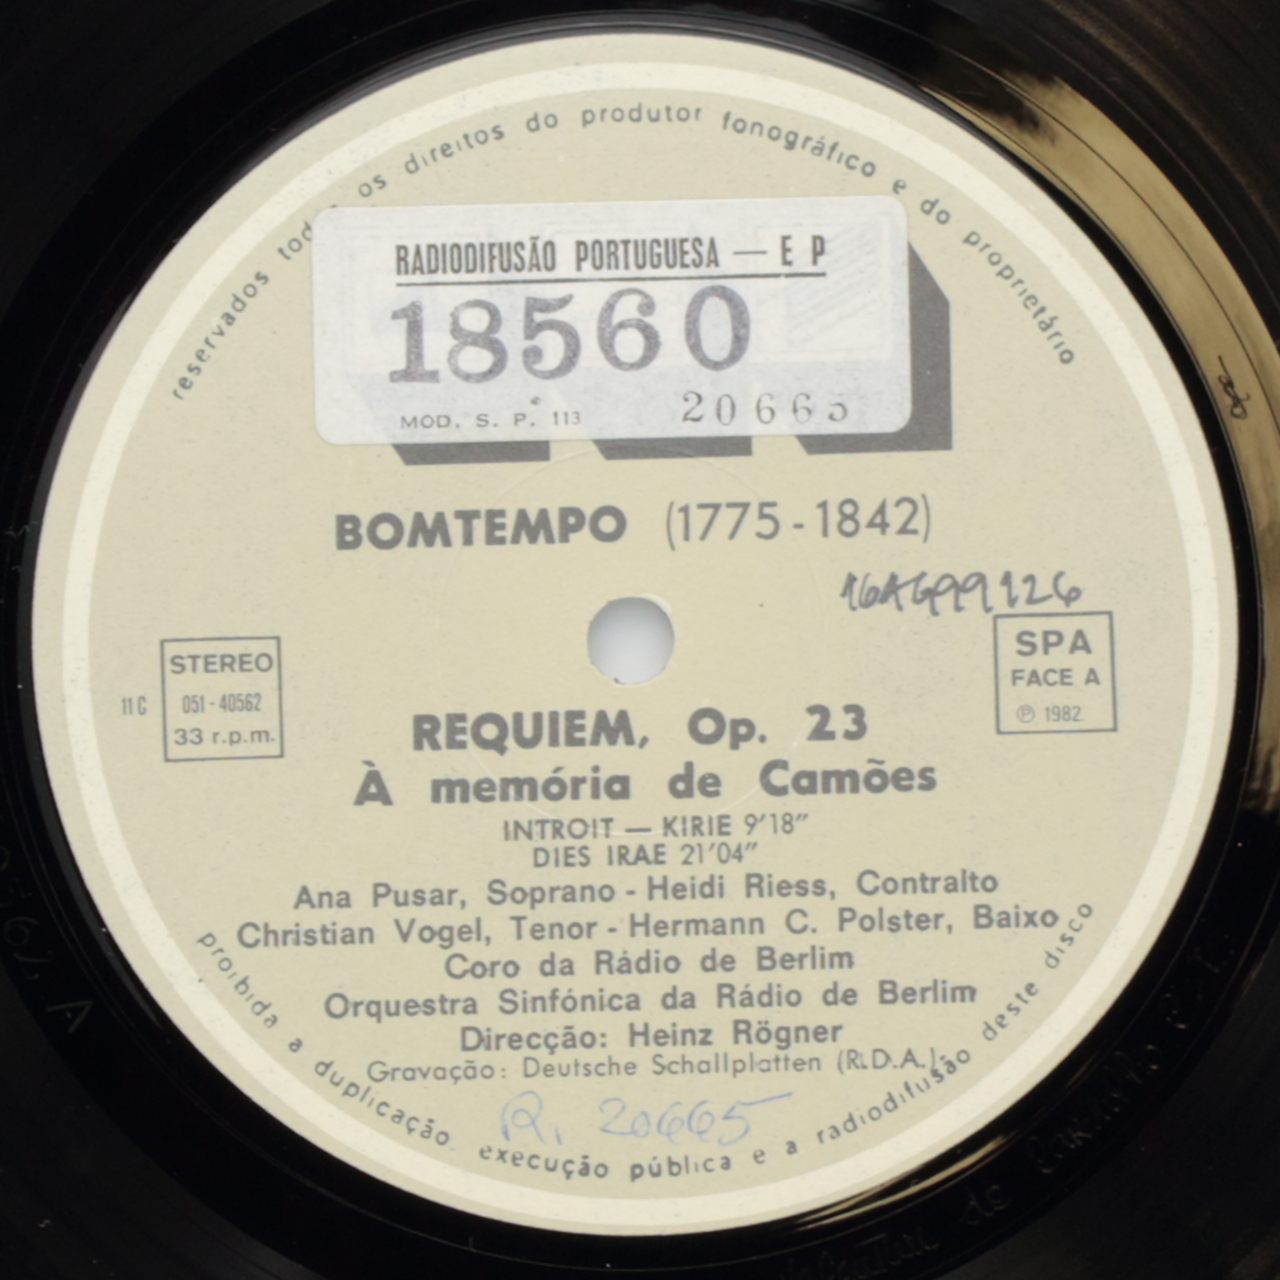 Bomtempo: Requiem, Op. 23 - À memória de Camões